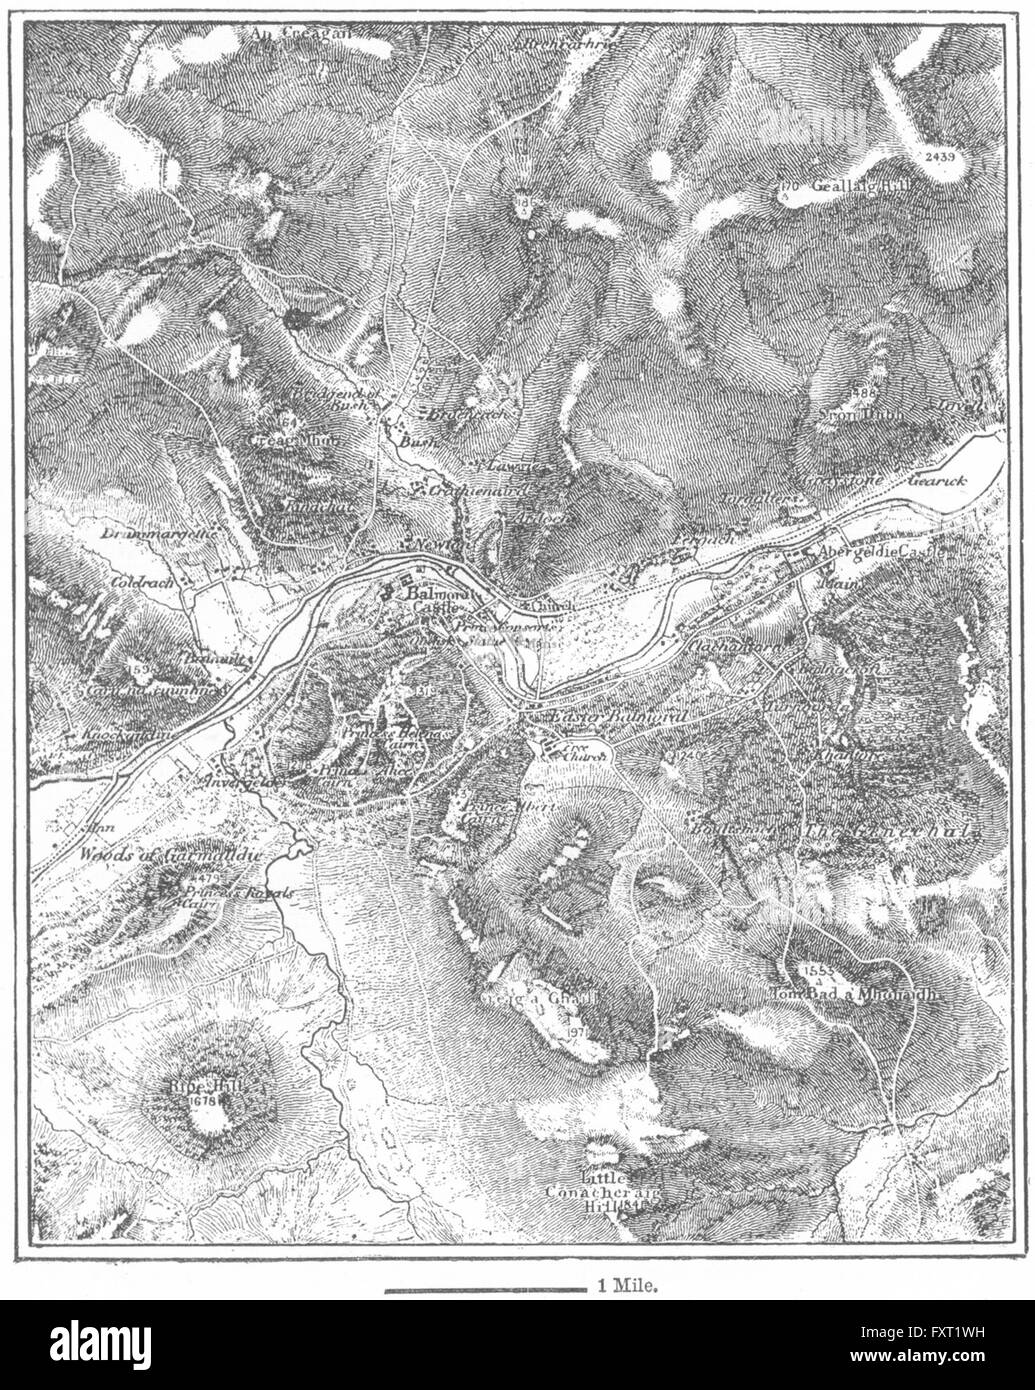 SCOTLAND: Balmoral, sketch map, c1885 Stock Photo